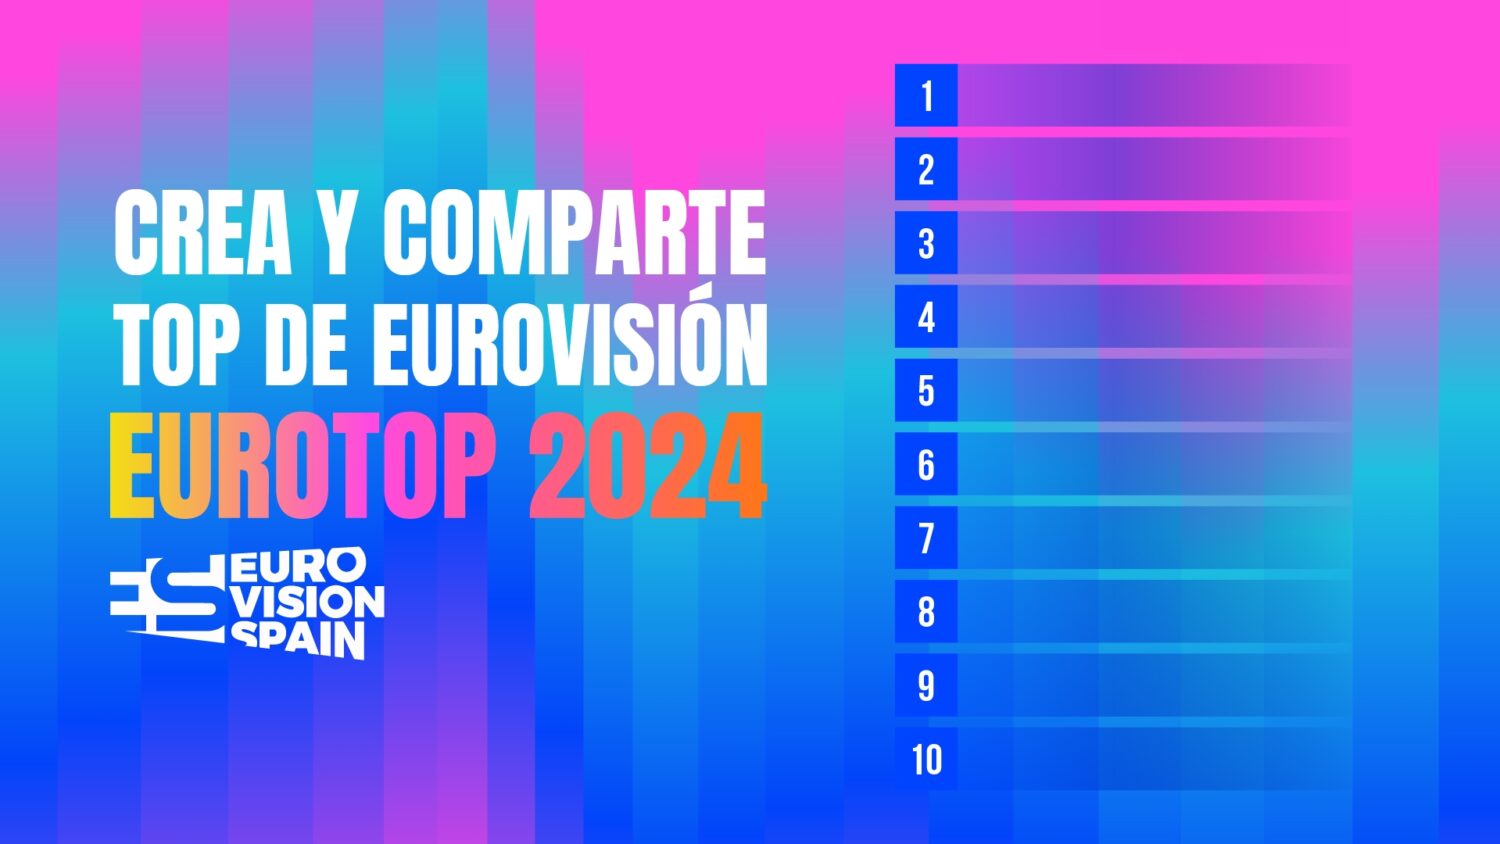 eurotop 2024